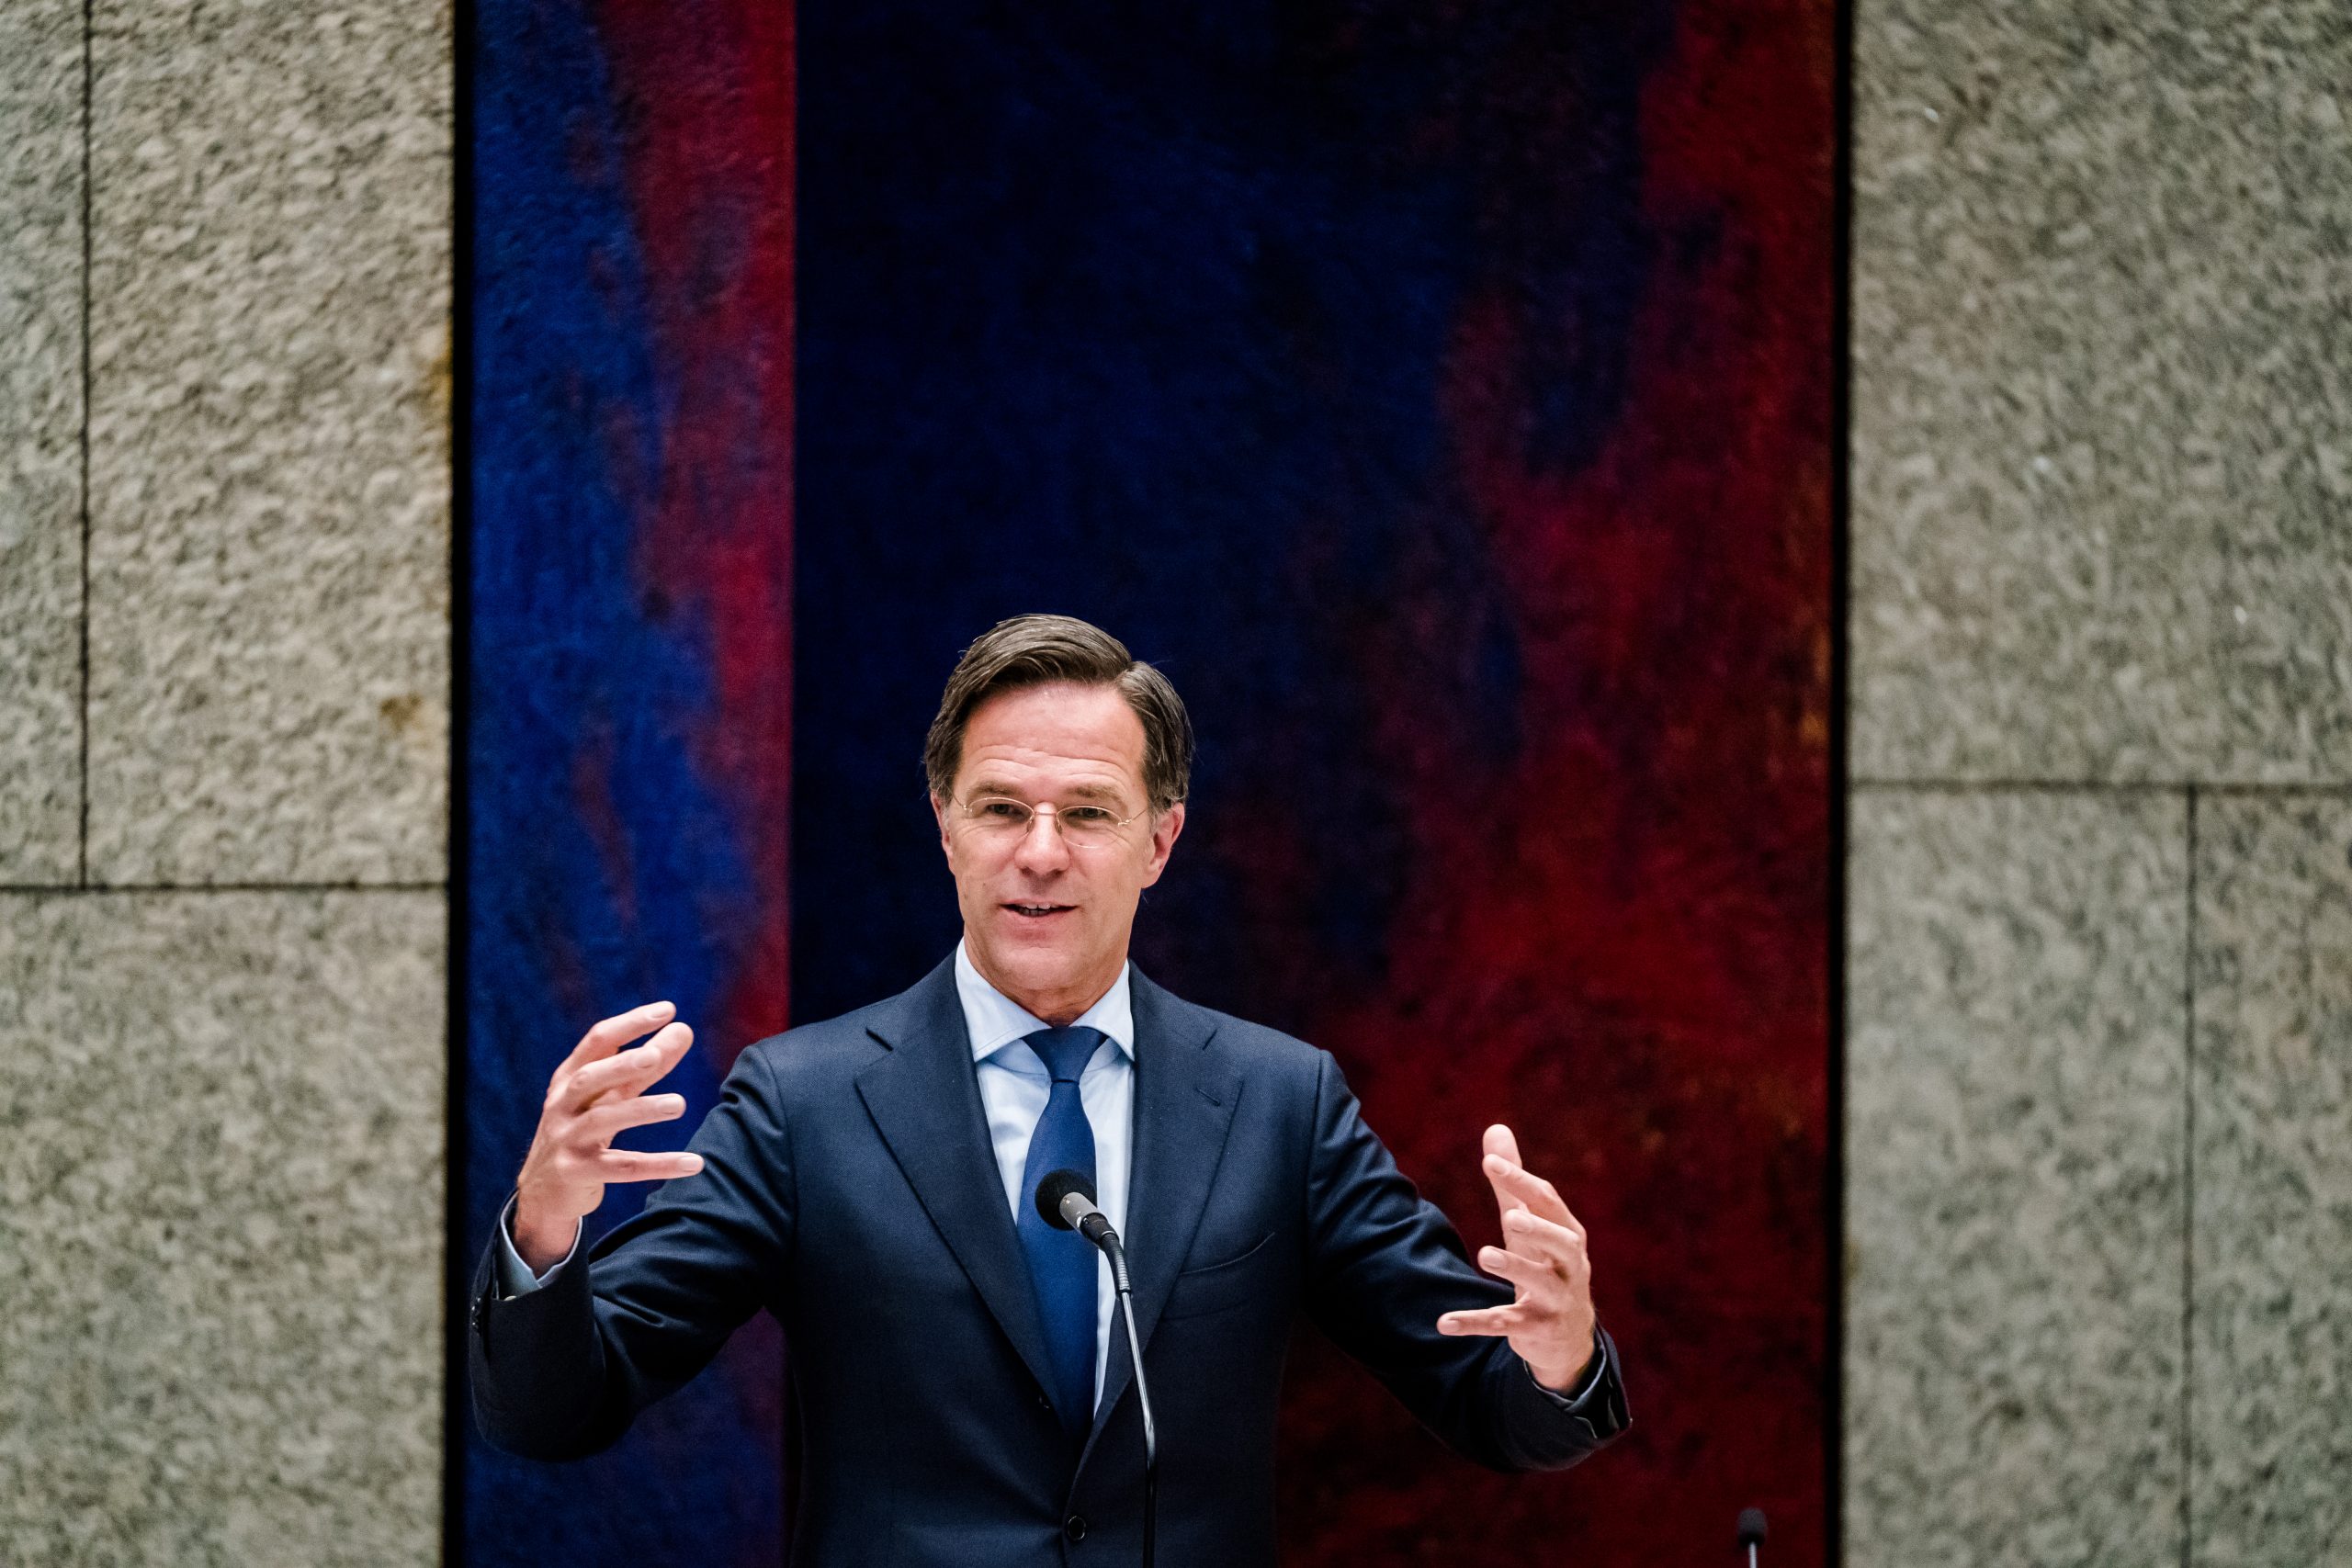 Demissionair premier Mark Rutte in debat over de coronasituatie in Nederland